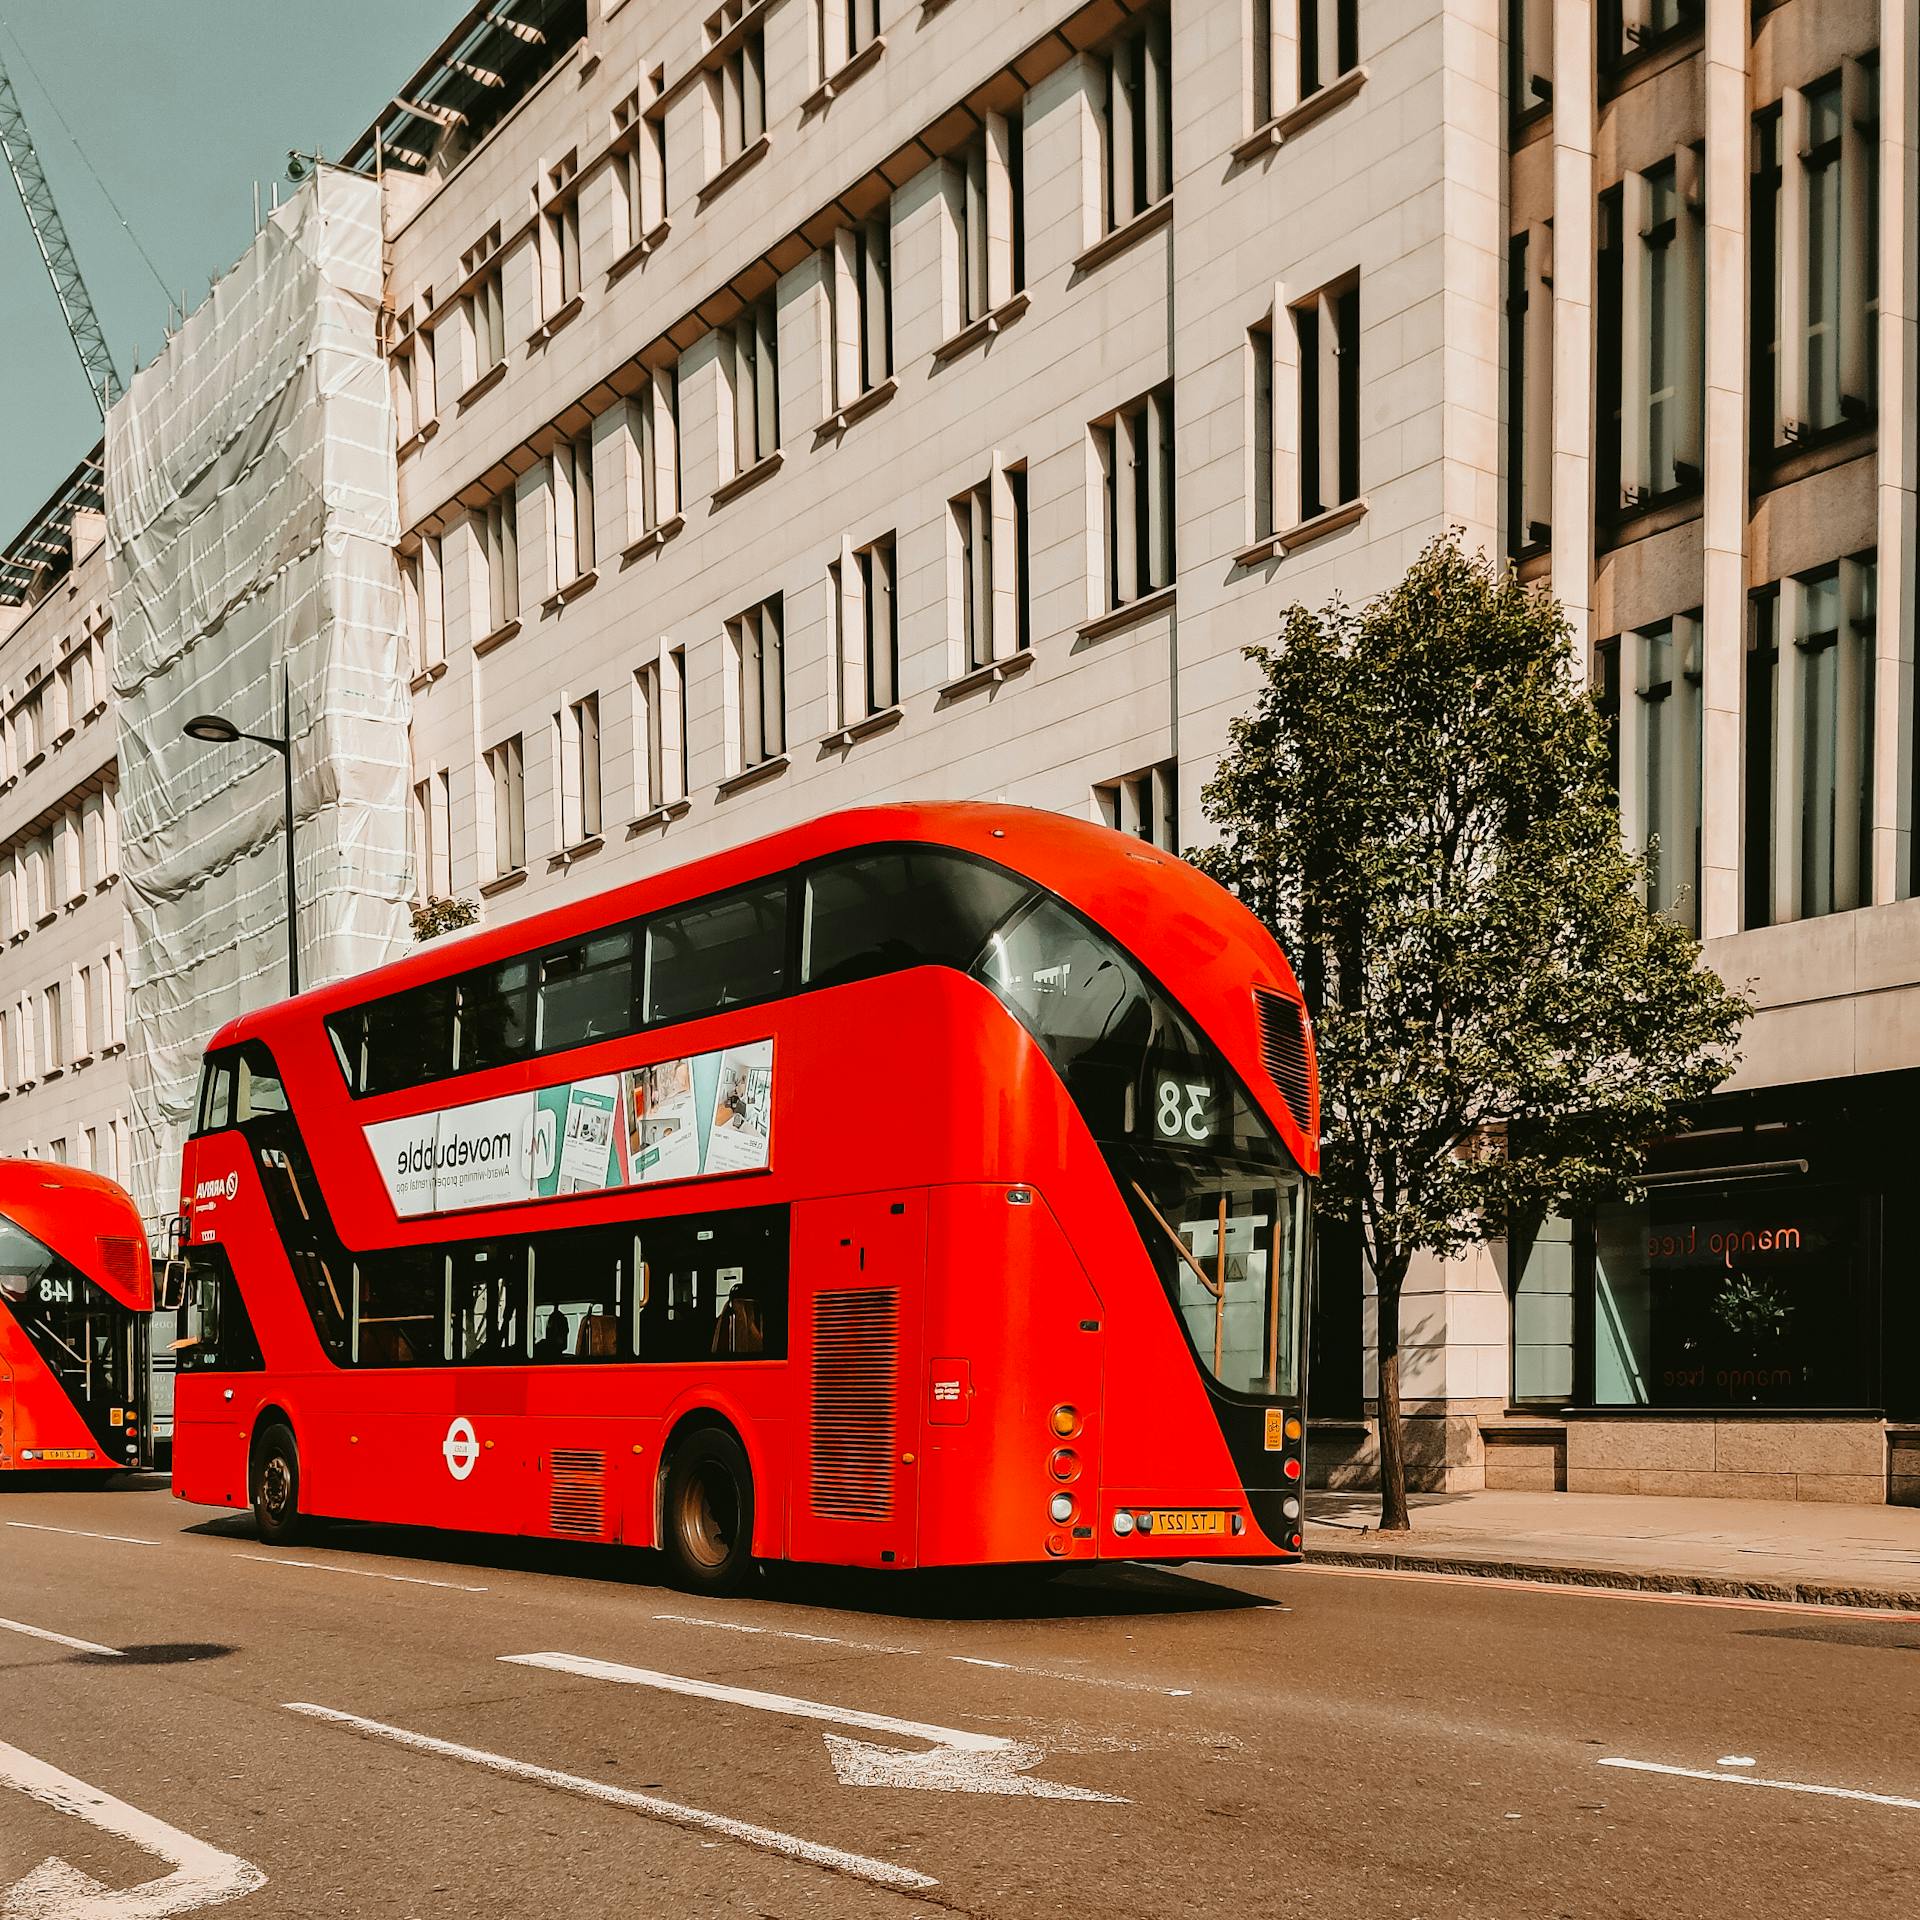 Un bus rouge à impériale passant dans une rue de la ville | Source : Pexels